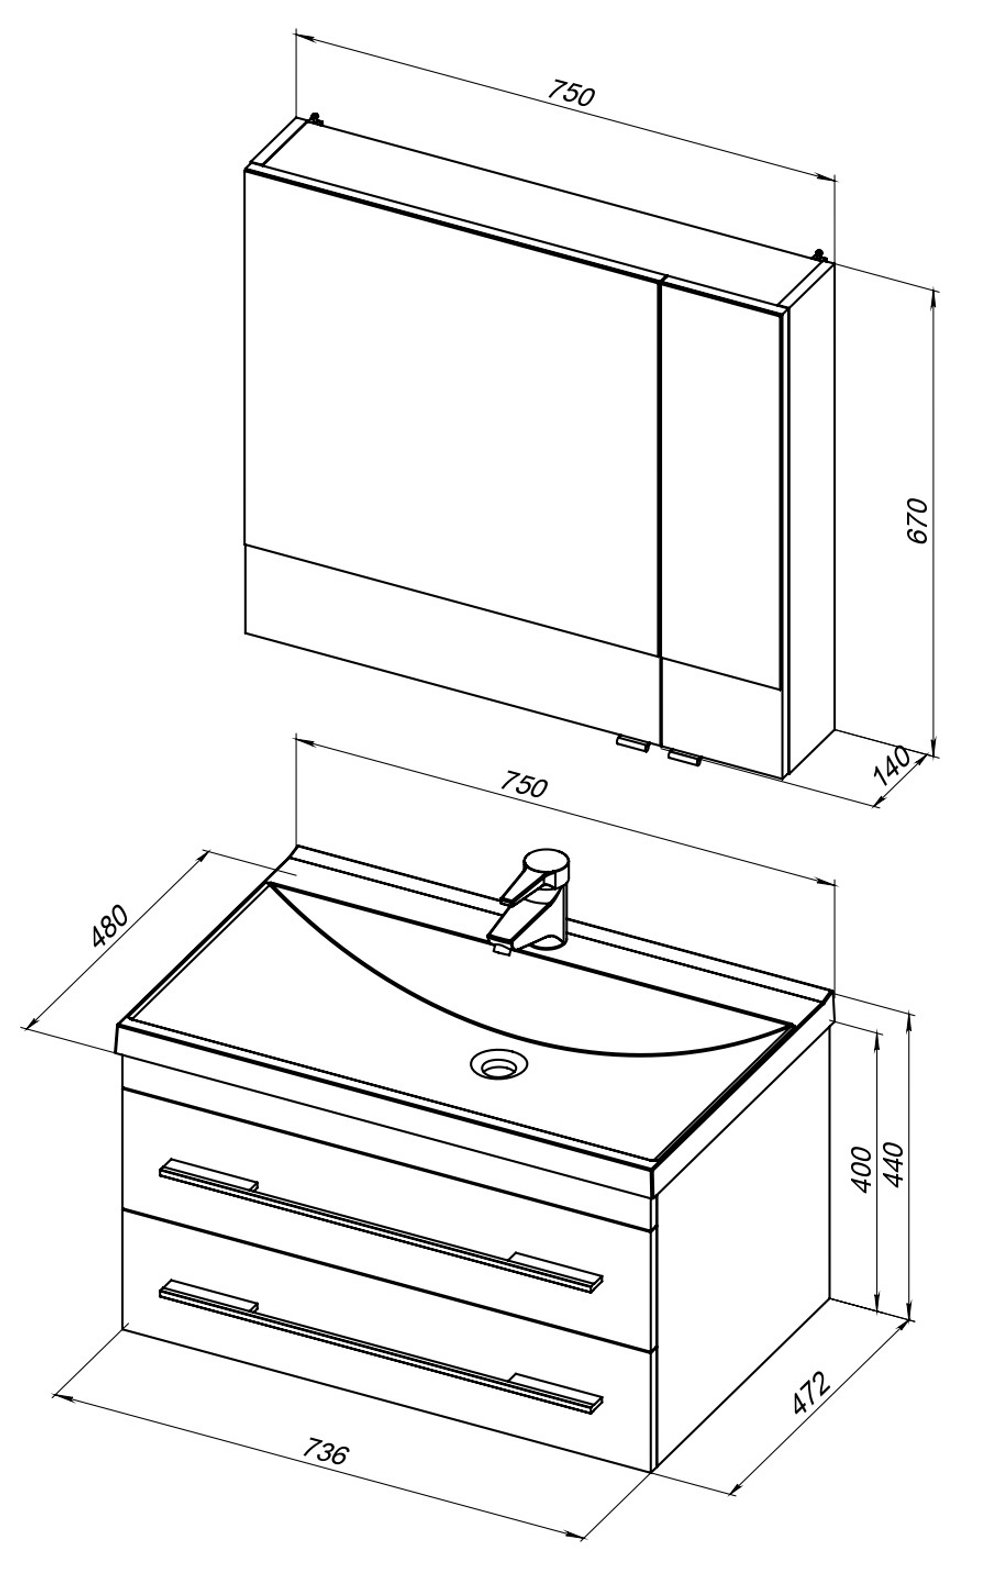 Мебель для ванной Aquanet Нота NEW 75 белый (камерино)